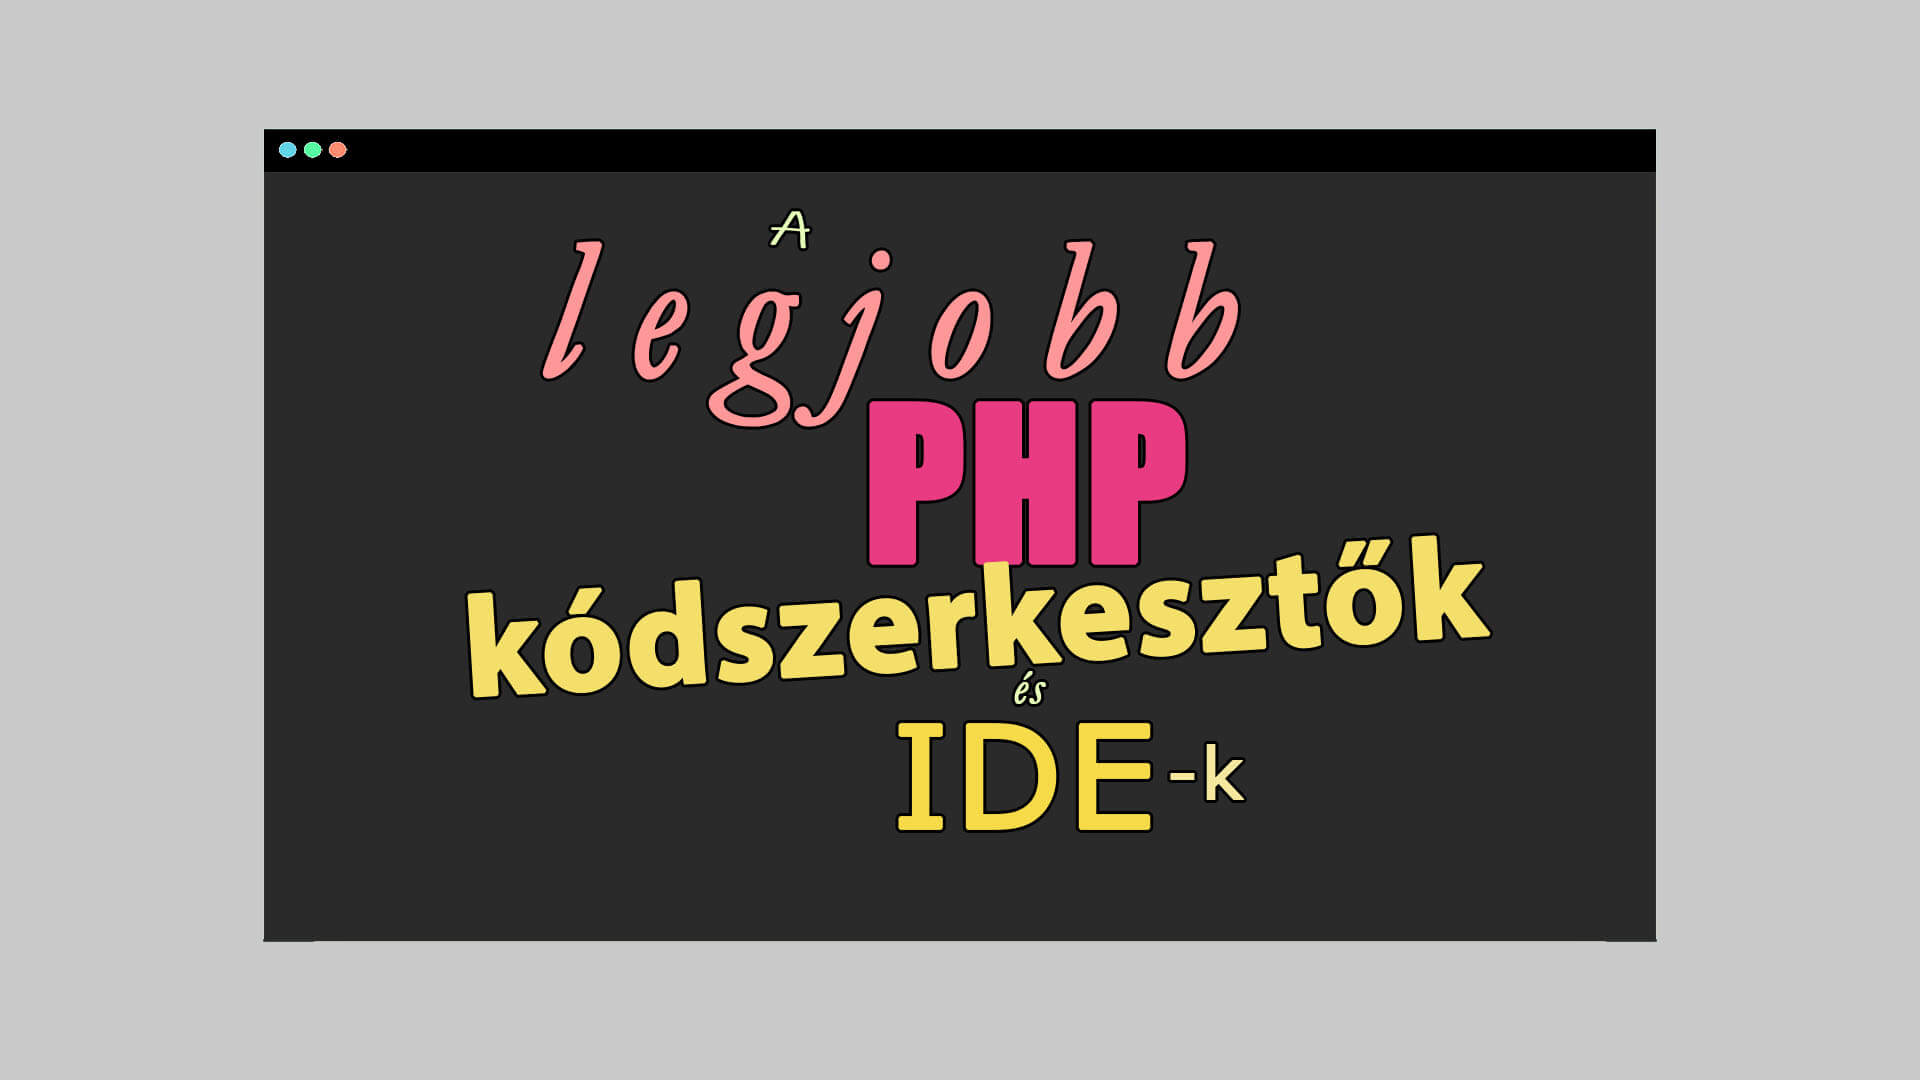 A legjobb PHP kódszerkesztő programok, IDE-k listája című cikk borítóképe